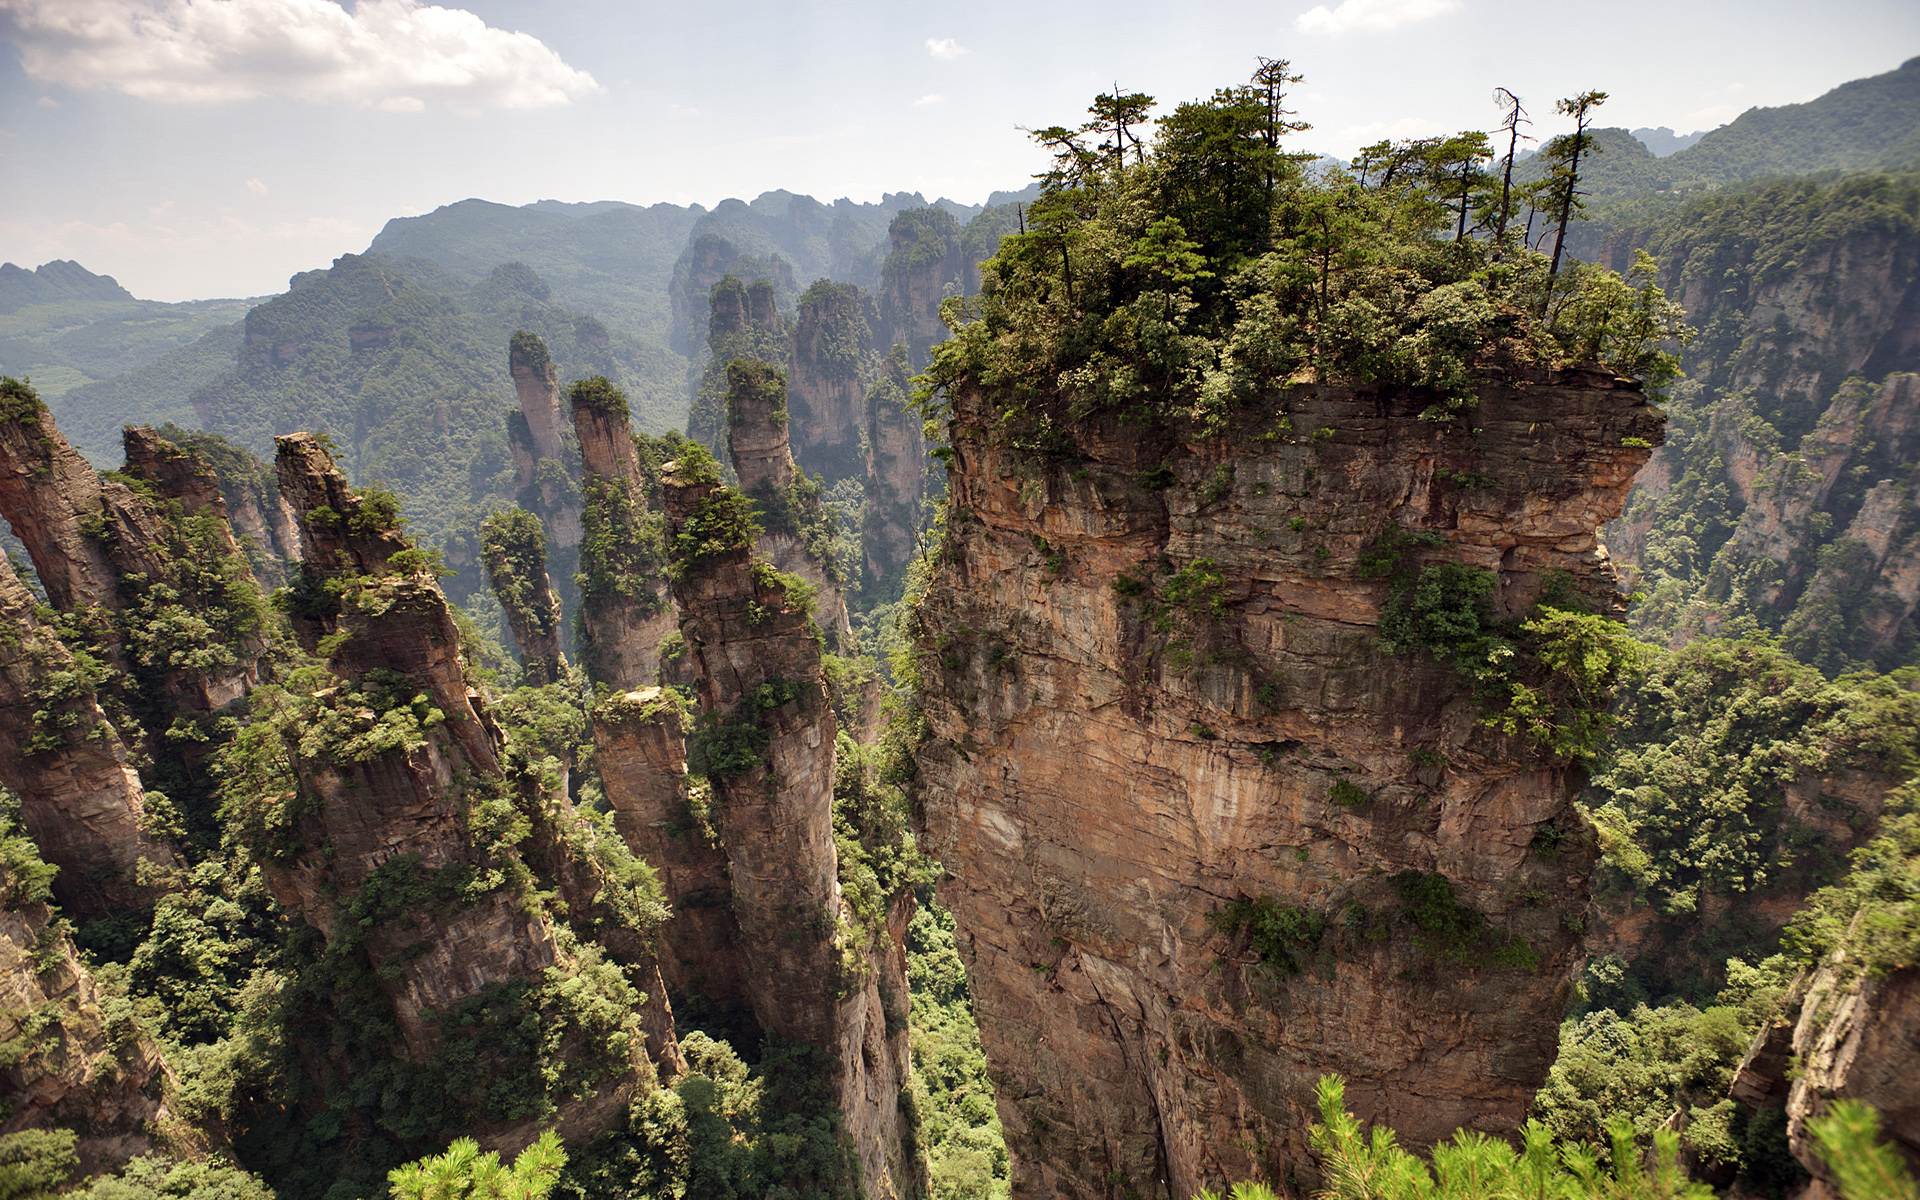 The Tianzi Mountians in Zhangjiajie National Park, China